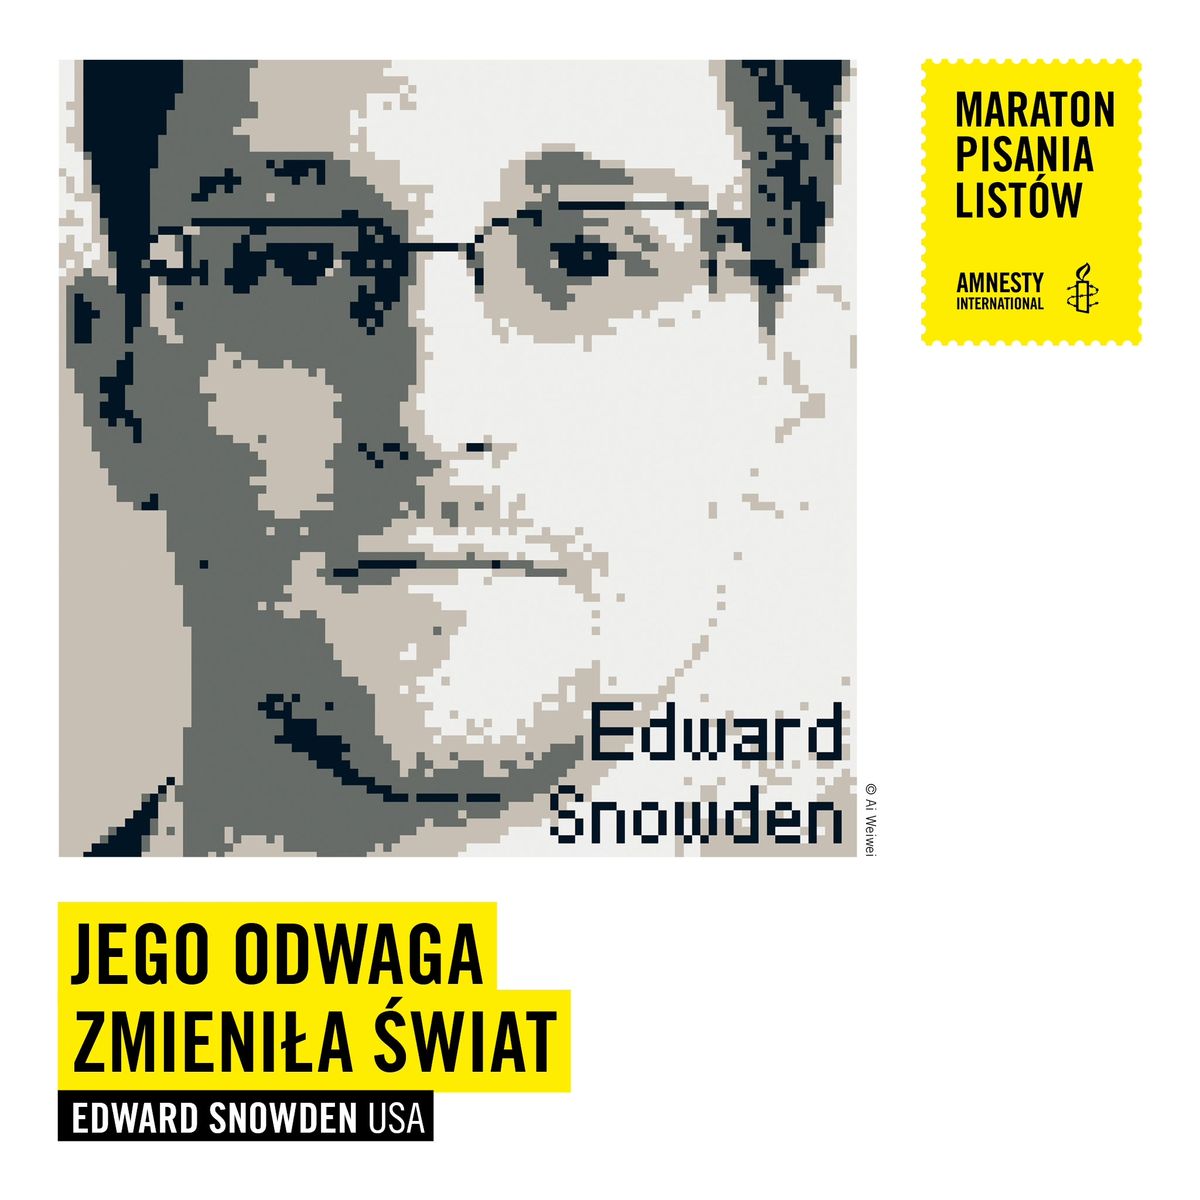 Maraton pisania listów Amnesty International: USA Edward Snowden